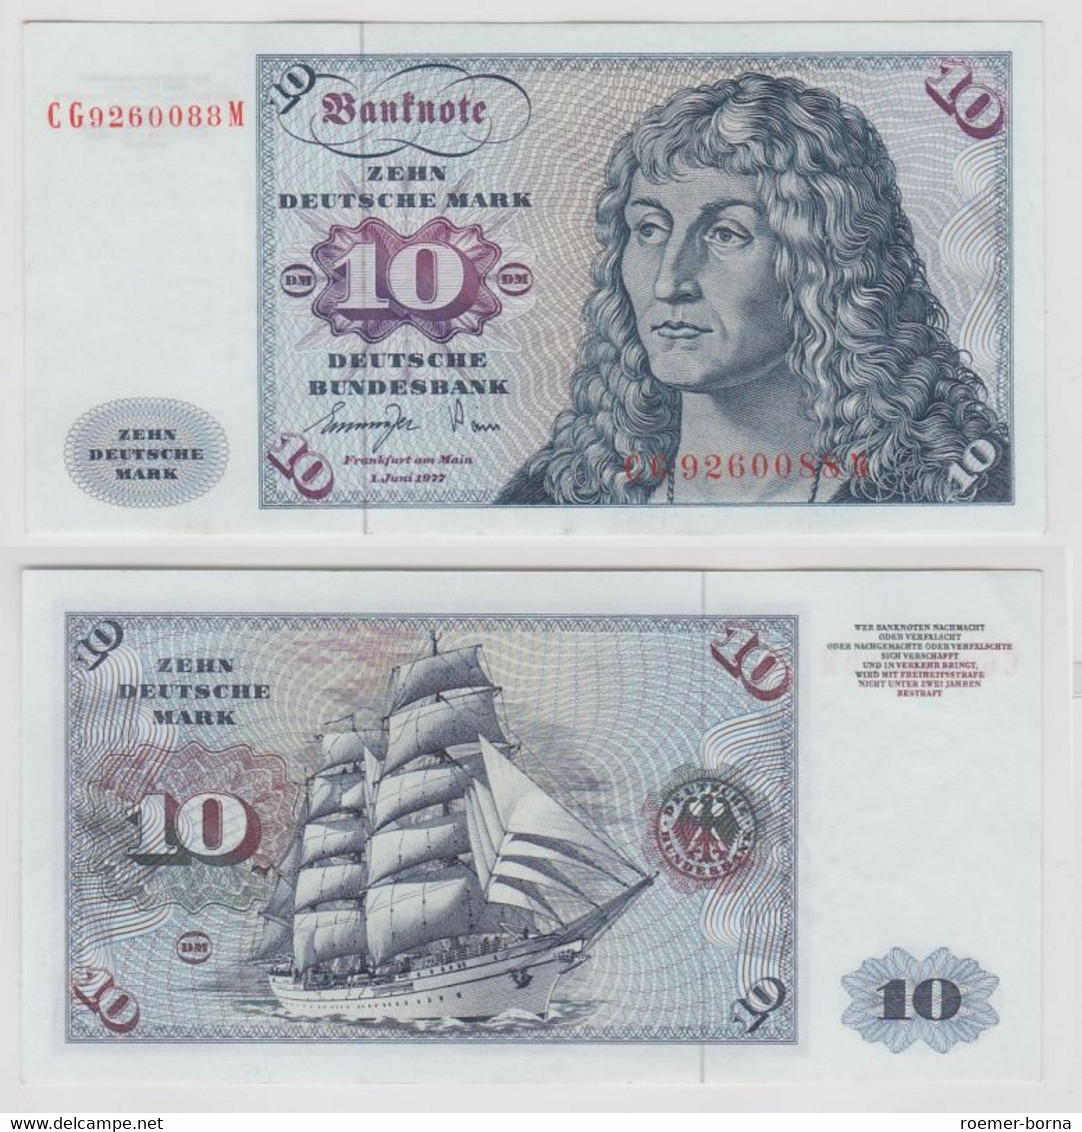 T147188 Banknote 10 DM Deutsche Mark Ro. 275a Schein 1.Juni 1977 KN CG 9260088 M - 10 DM